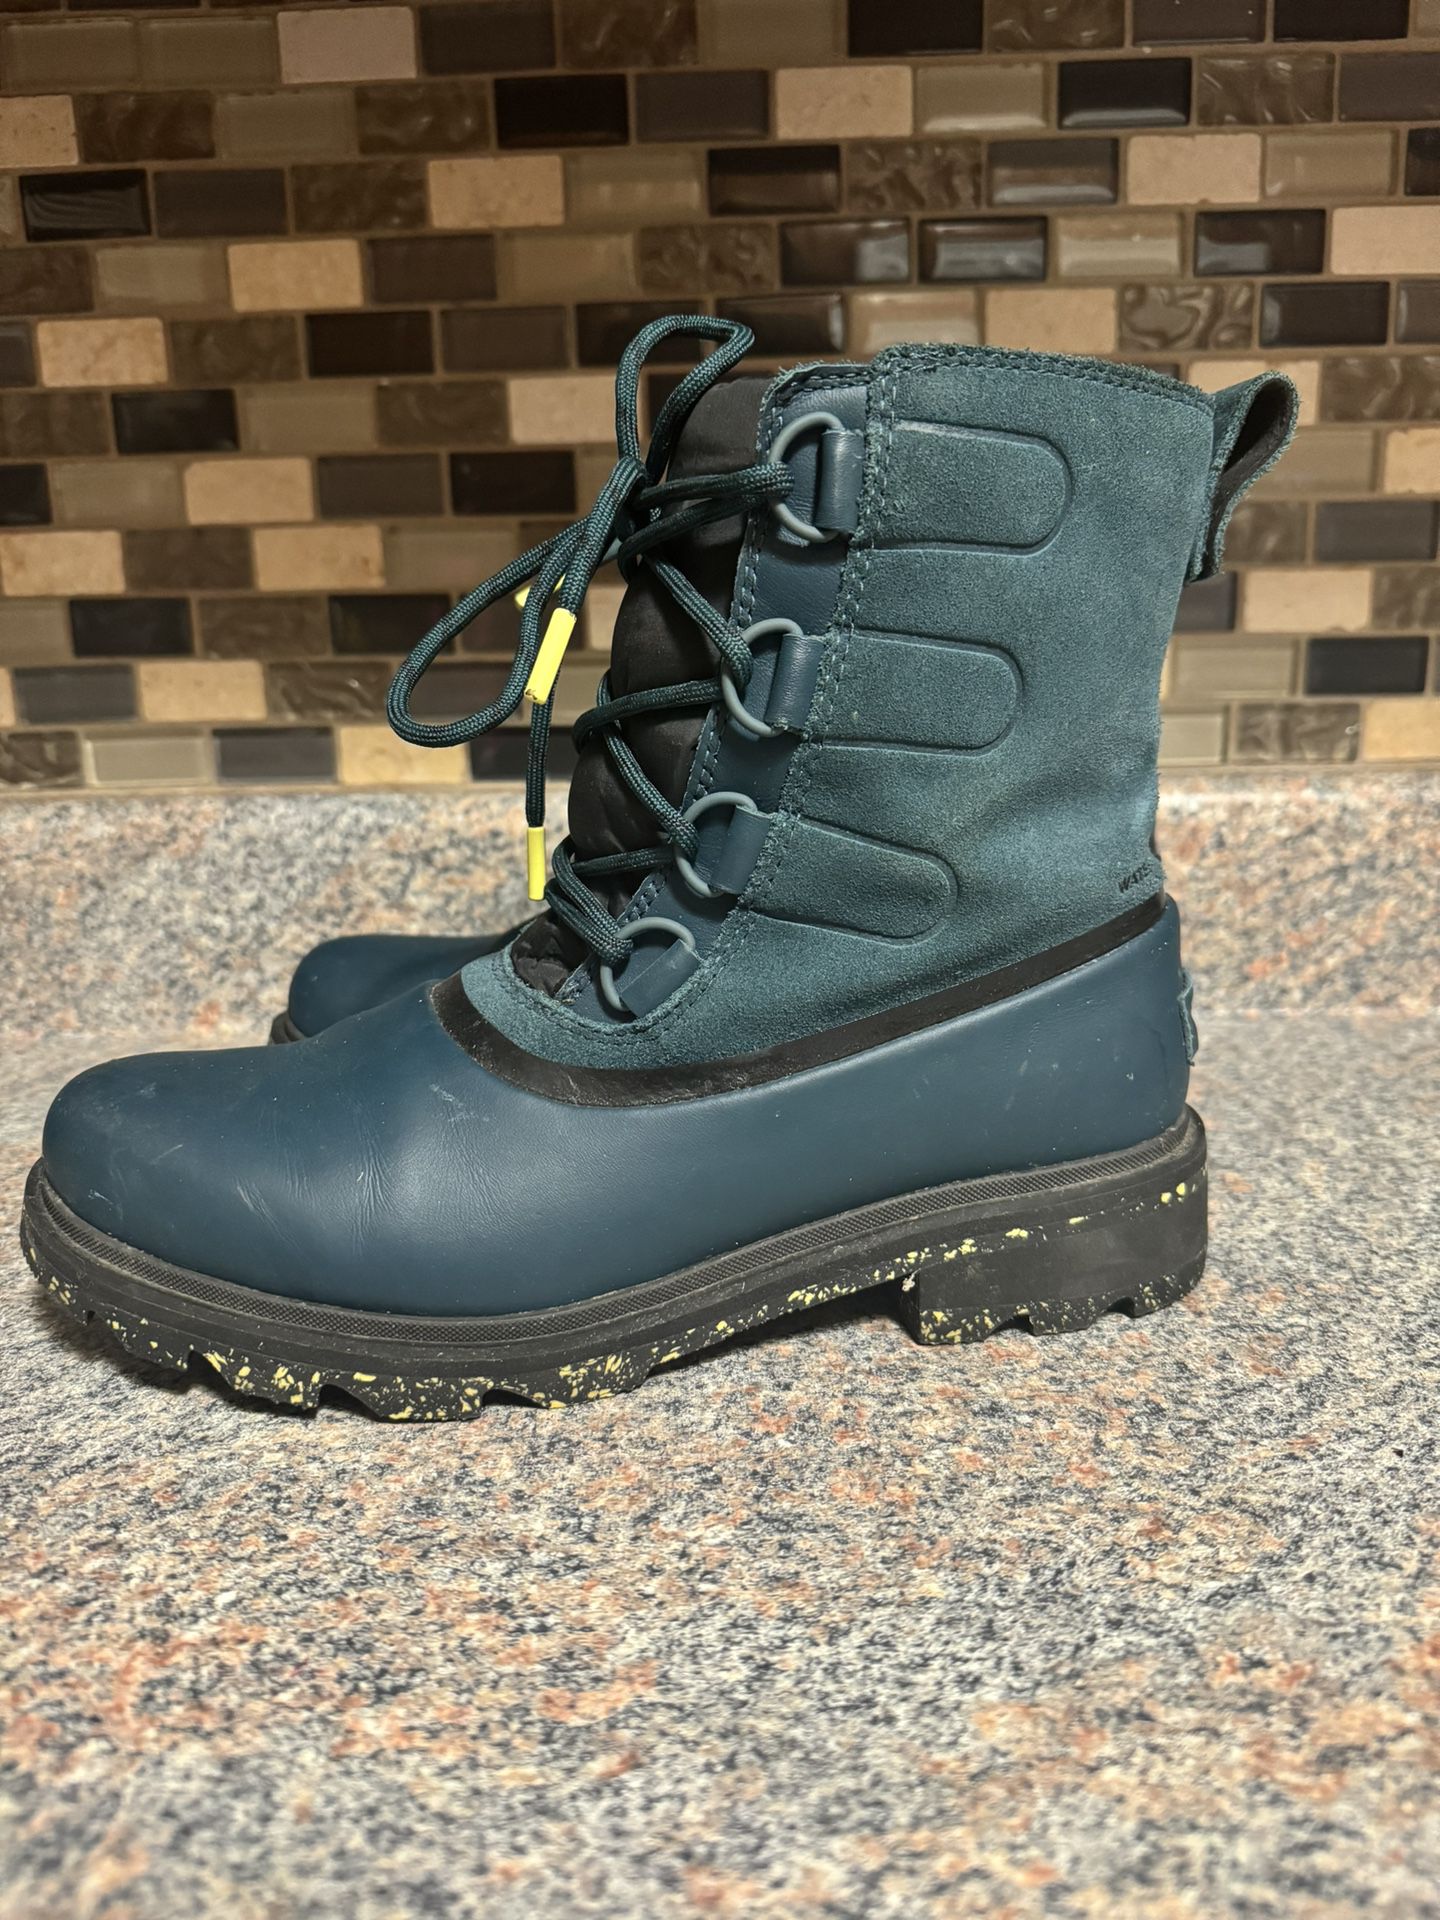 Women’s Sorel Waterproof Snow Boots 